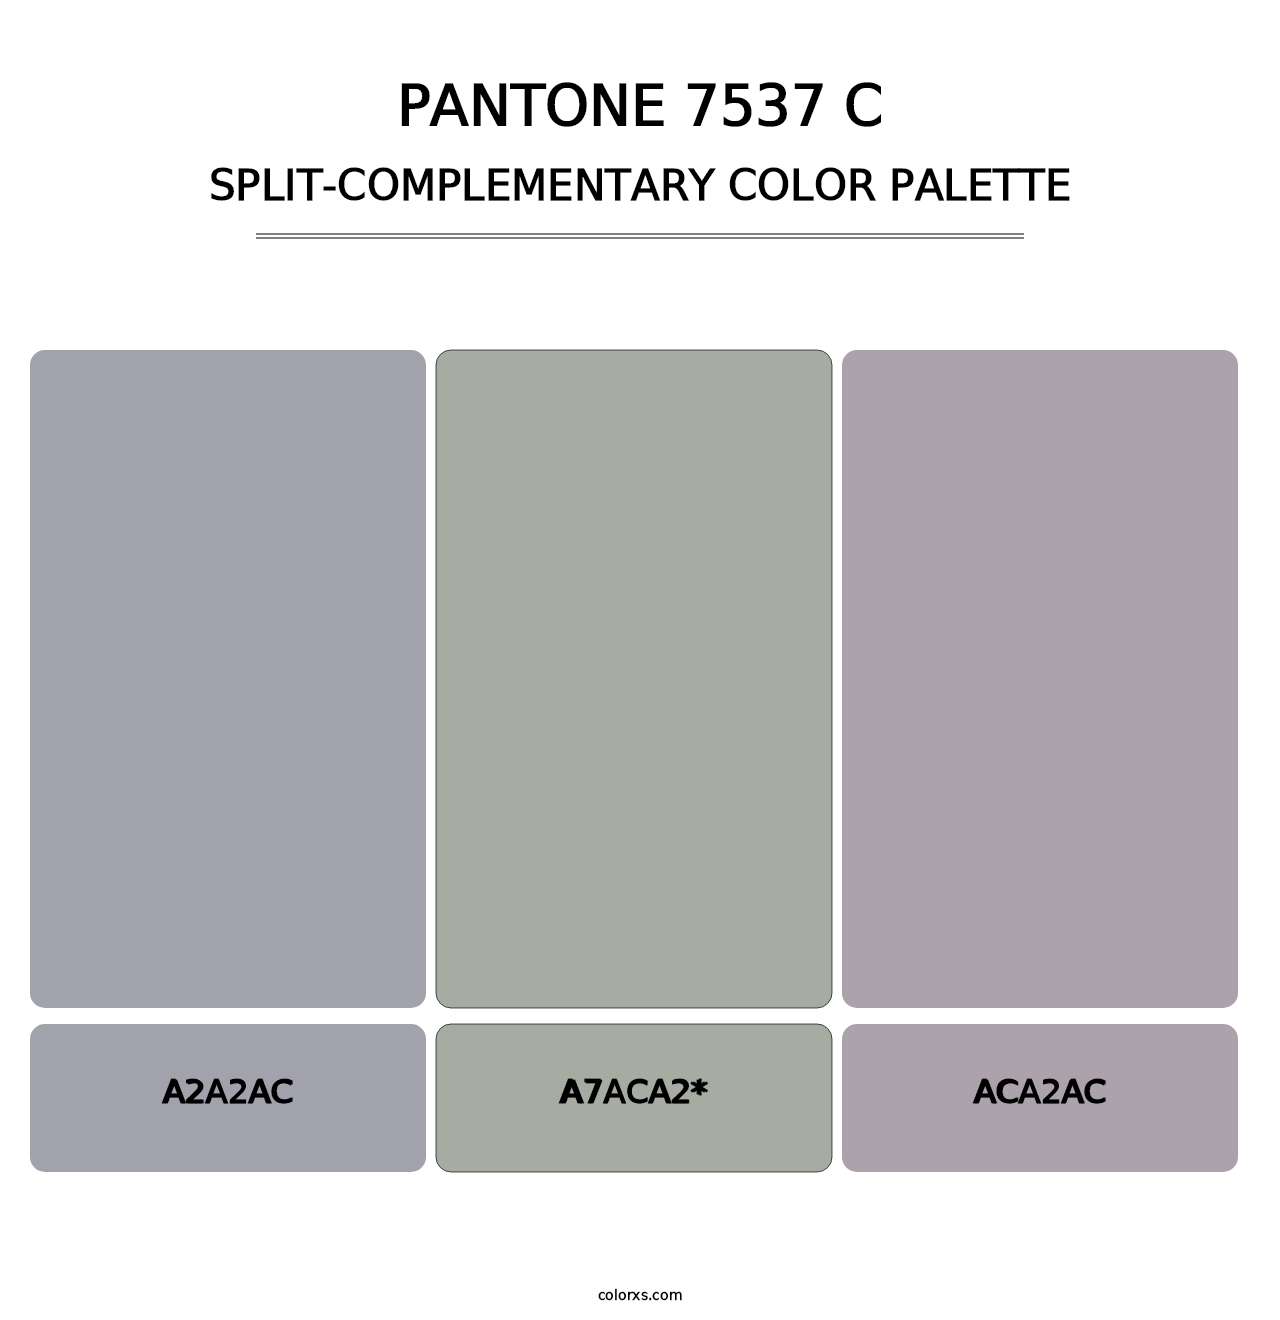 PANTONE 7537 C - Split-Complementary Color Palette